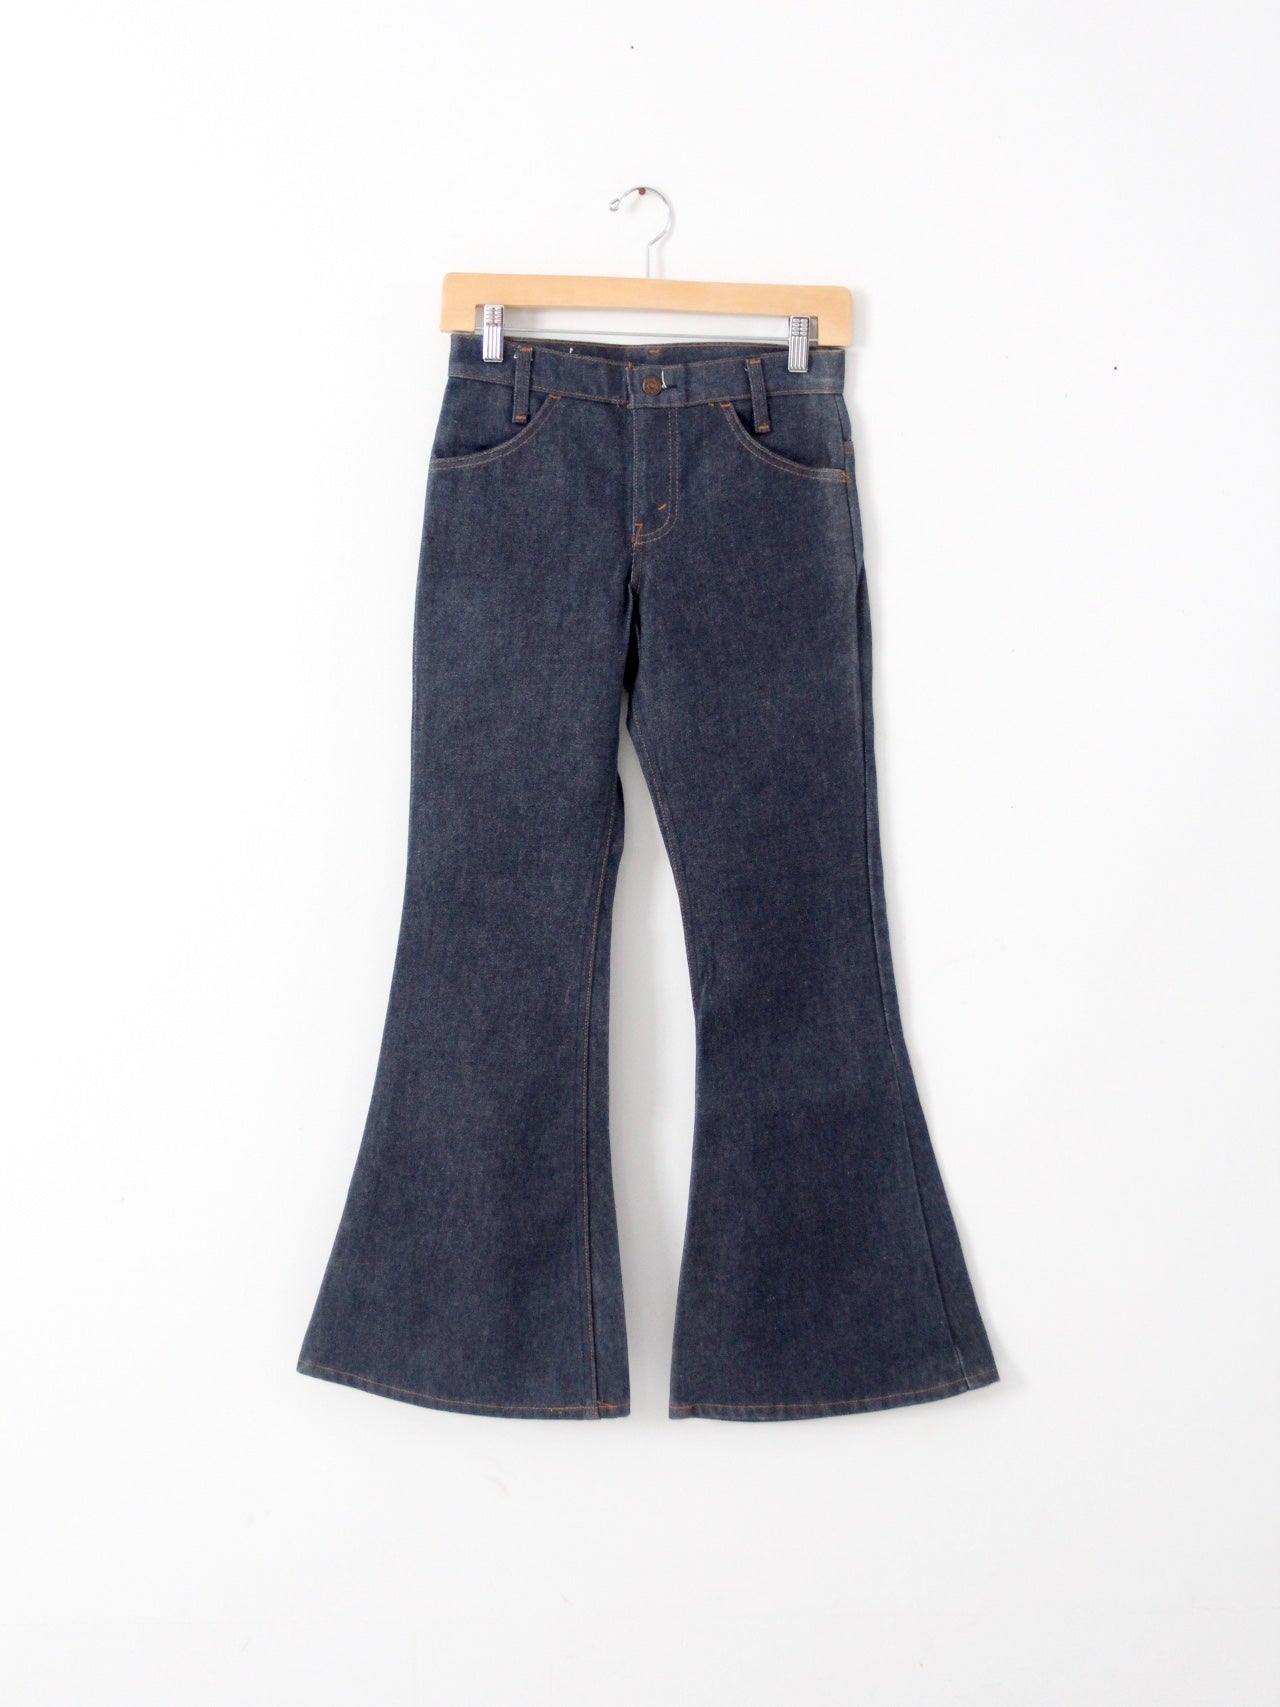 vintage Levis 684 bell bottom jeans, 28 x 28 – 86 Vintage